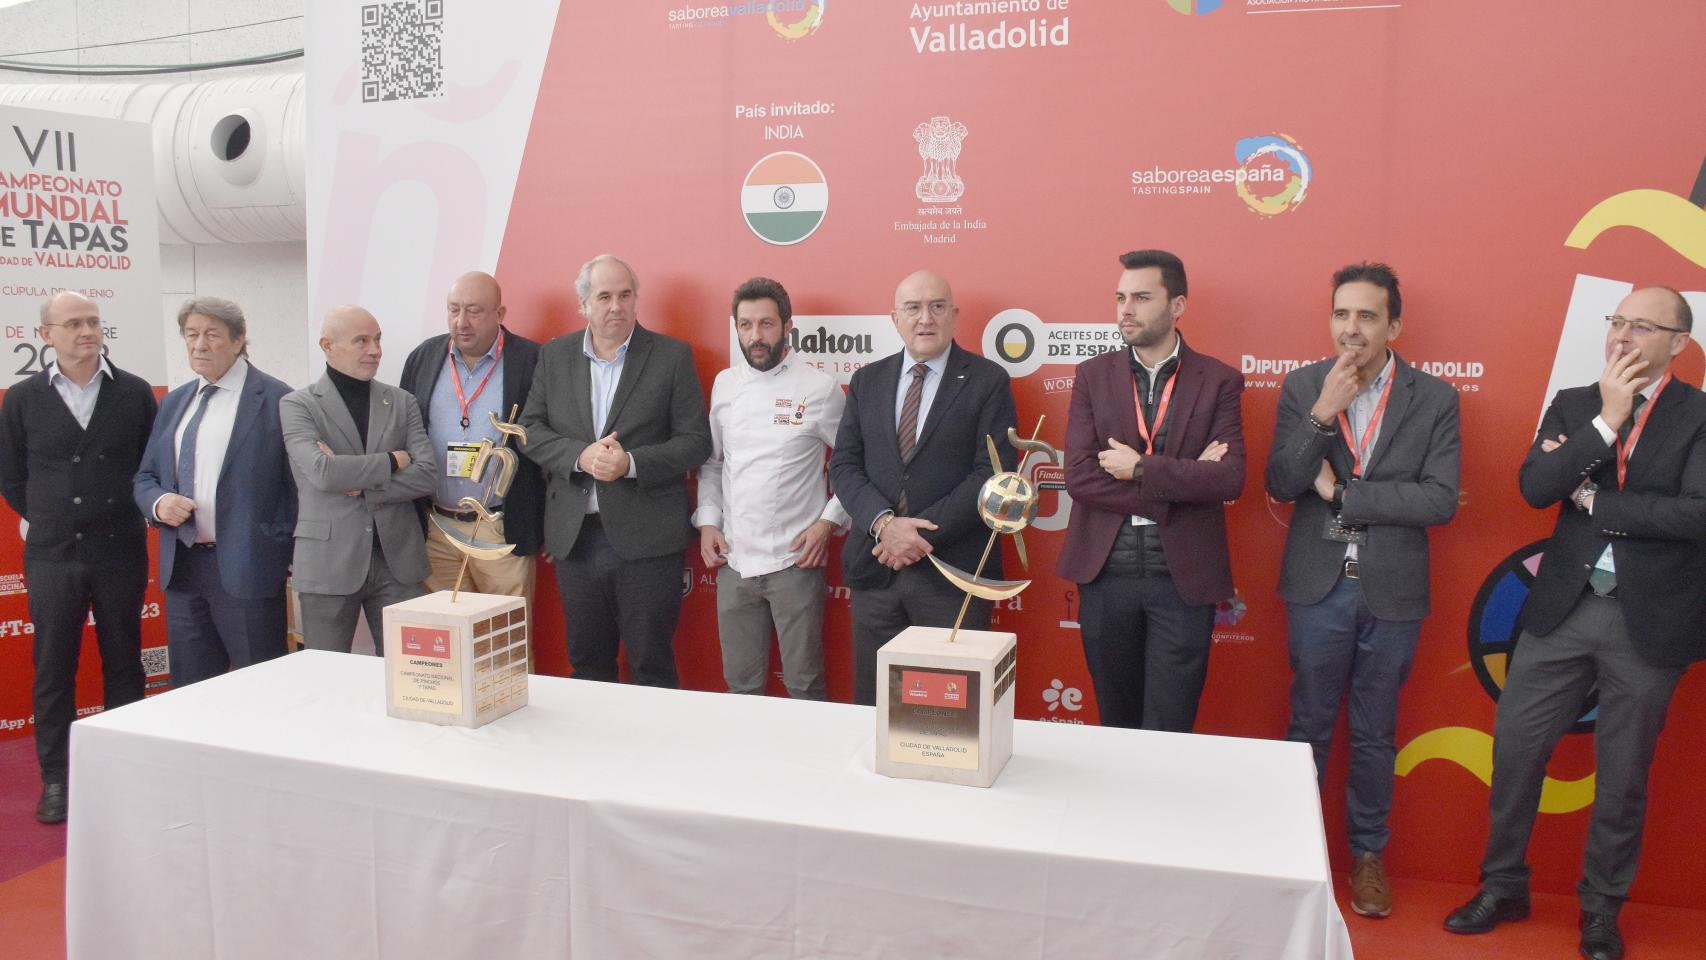 Inauguración de los concursos de pinchos en Valladolid